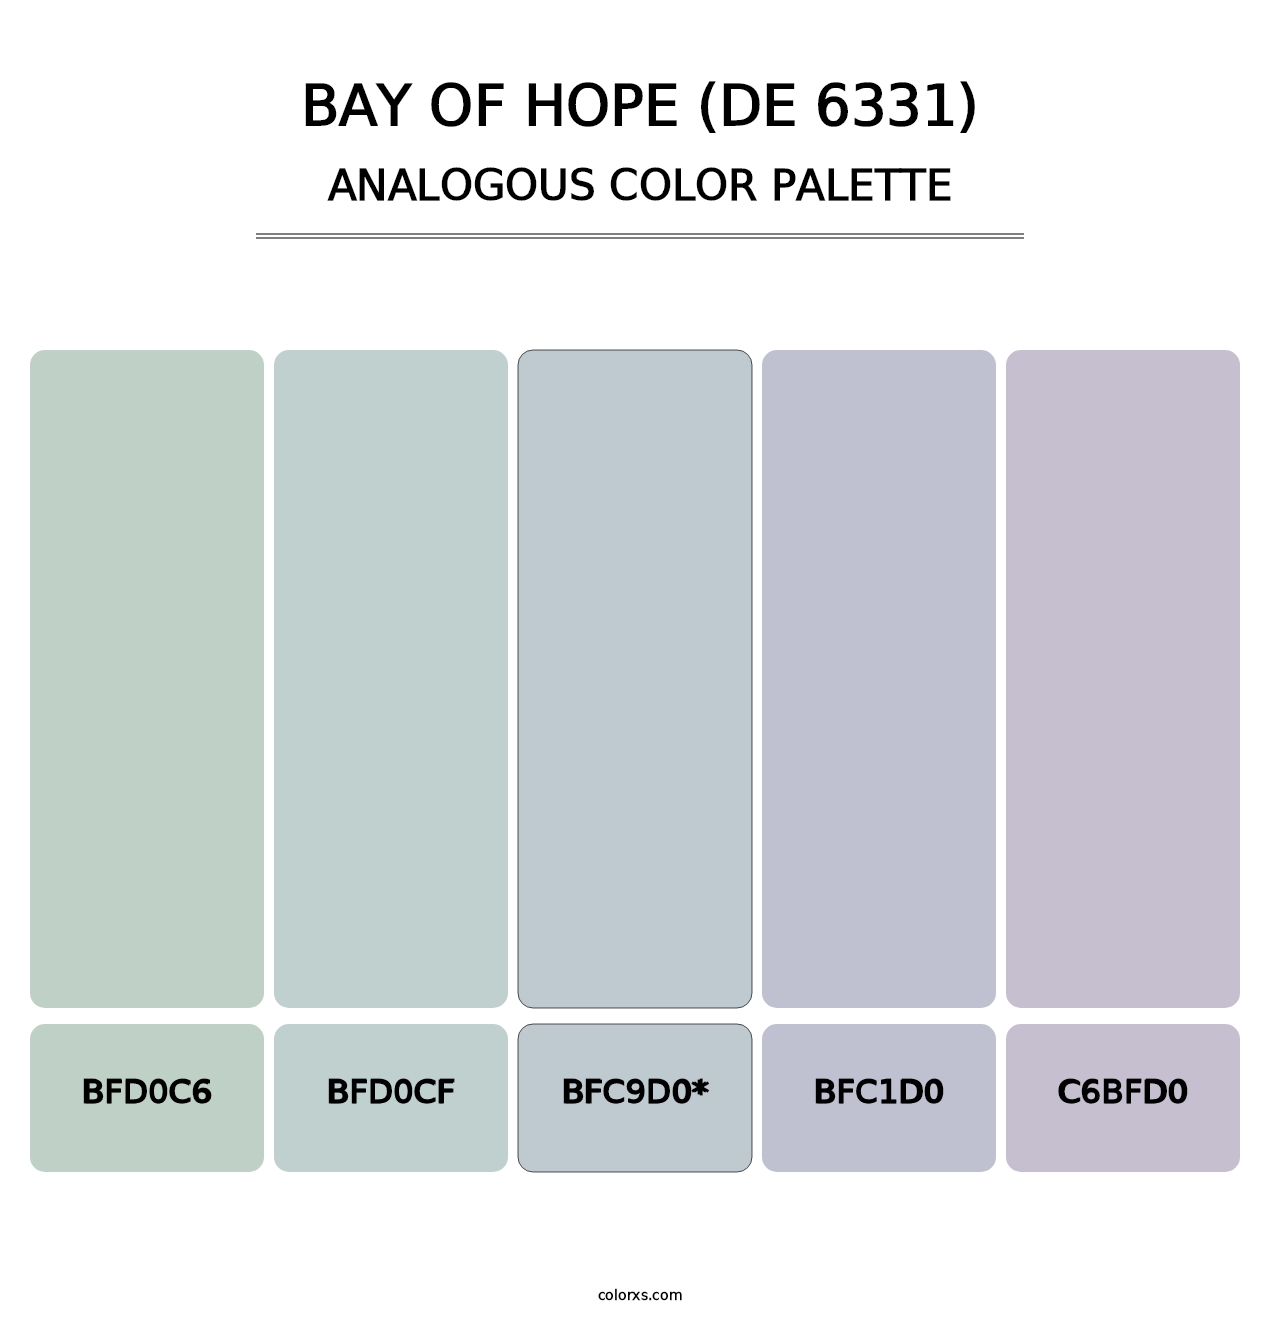 Bay of Hope (DE 6331) - Analogous Color Palette